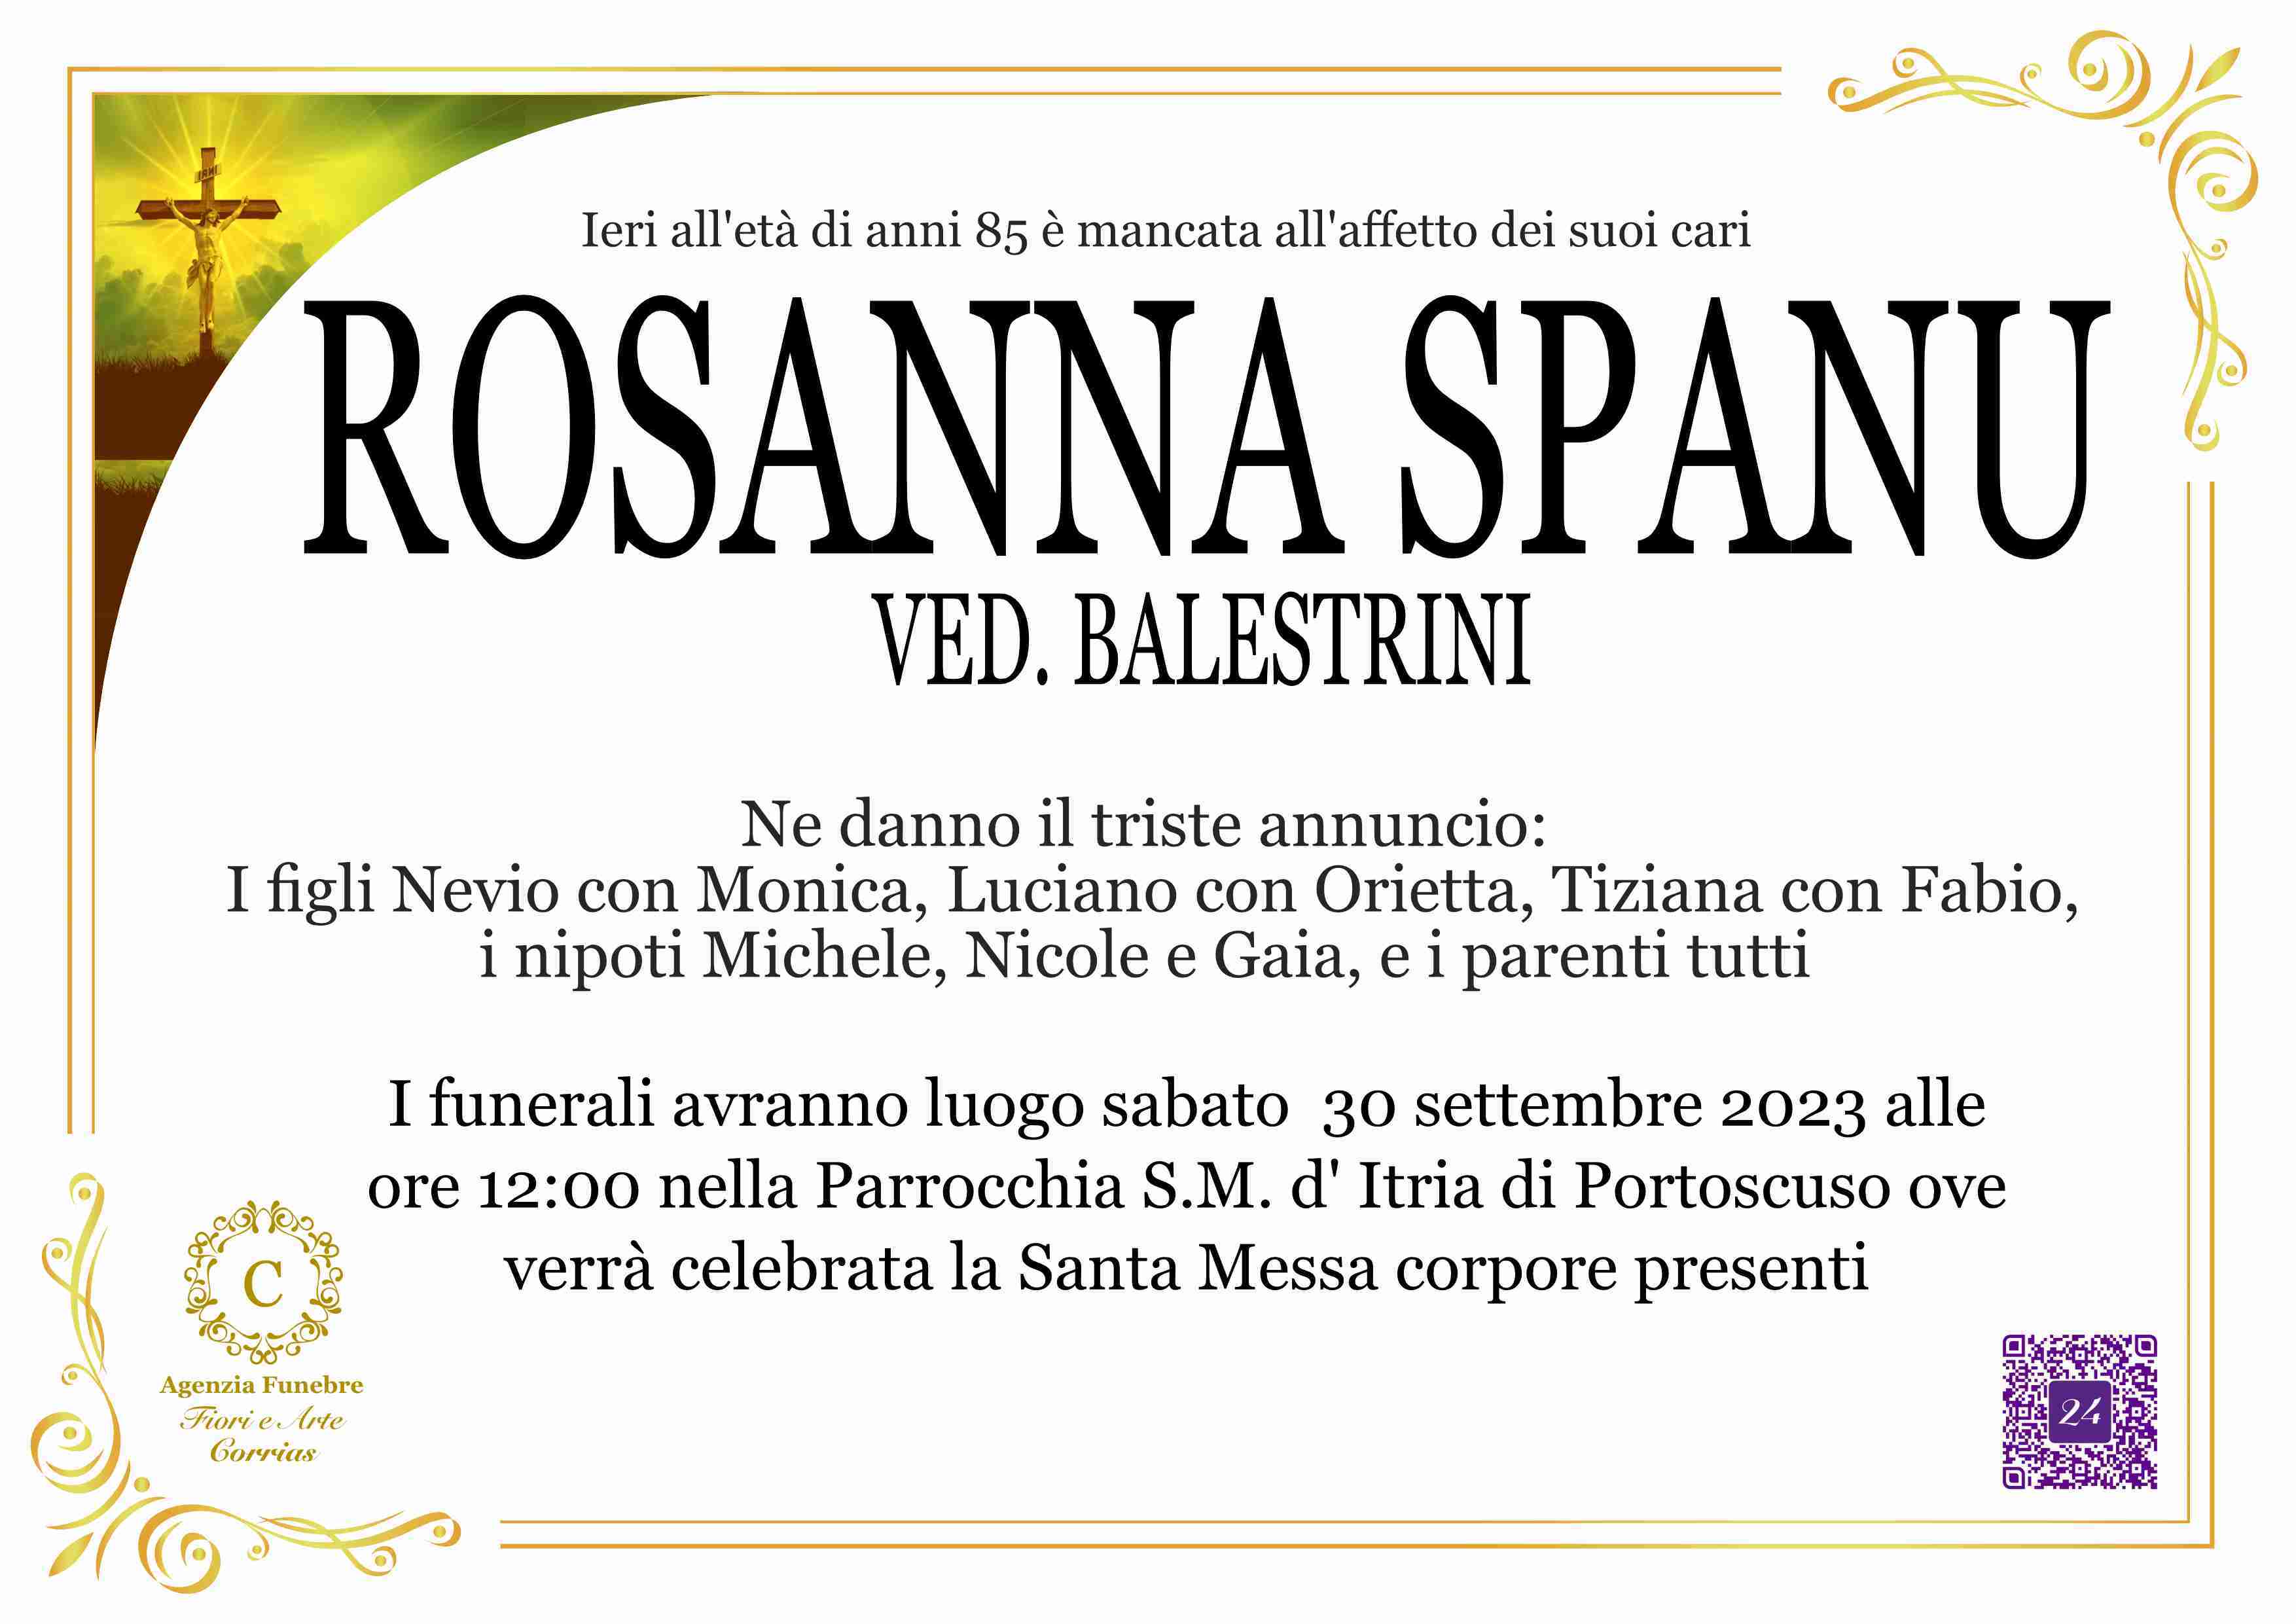 Rosanna Spanu